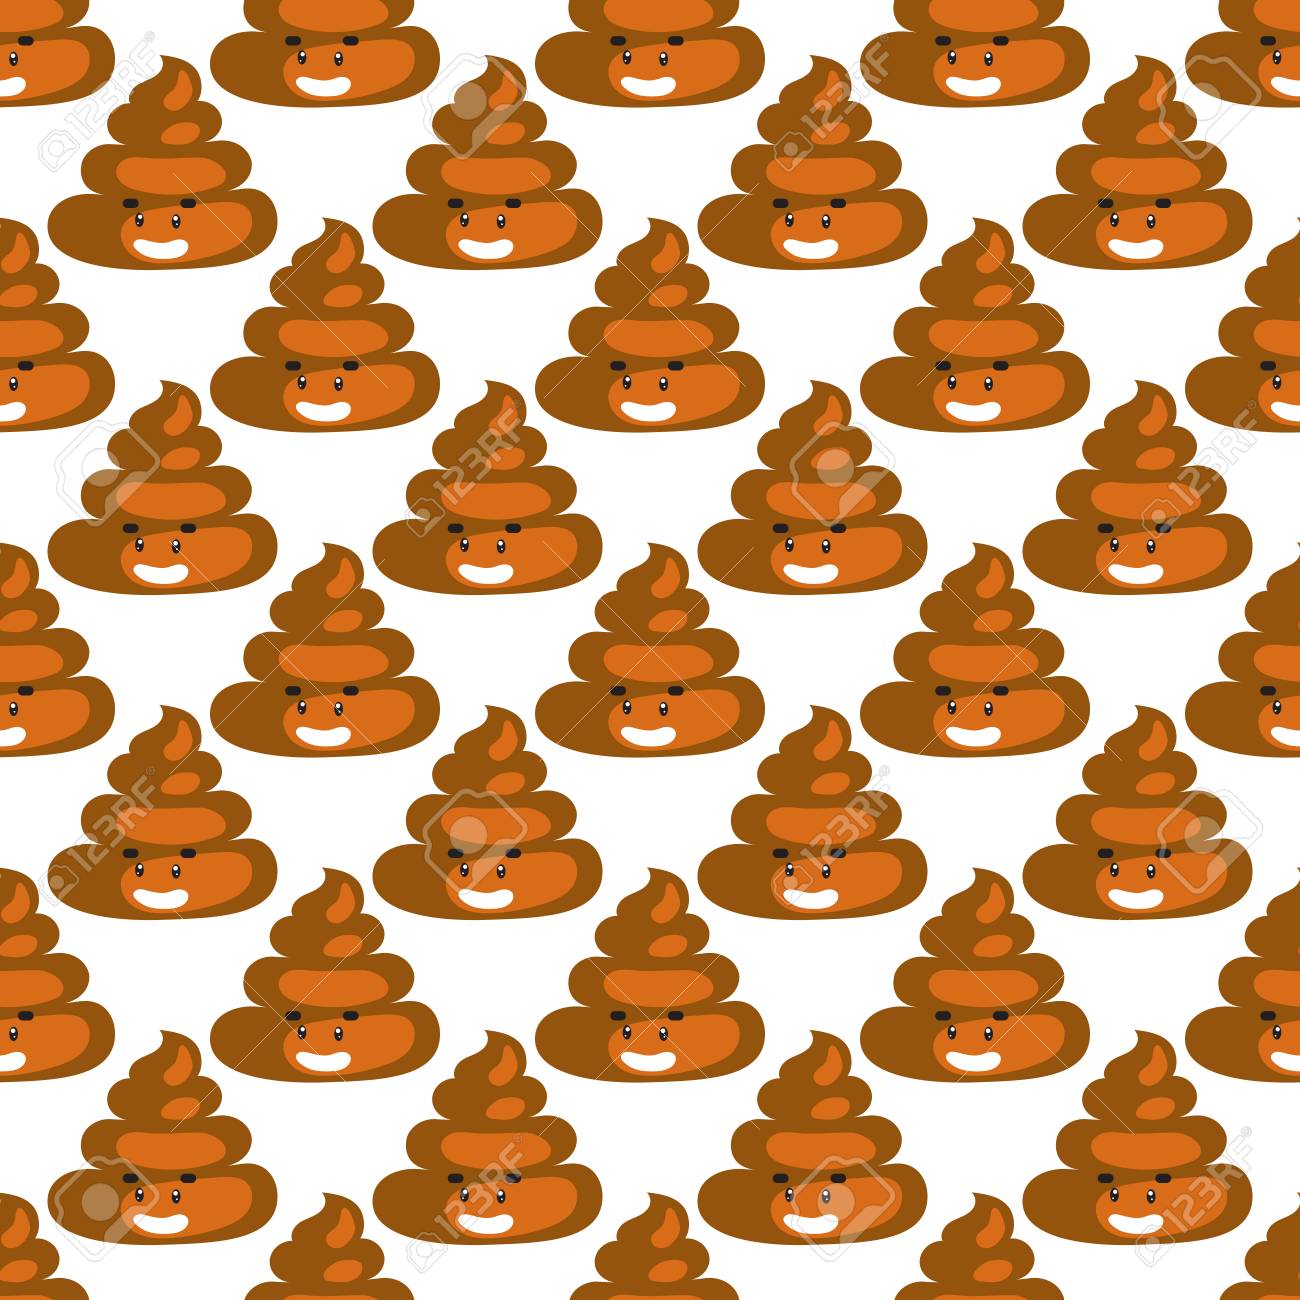 🔥 Download Poo Emoji Pattern Poop Fun Seamless Background Royalty By